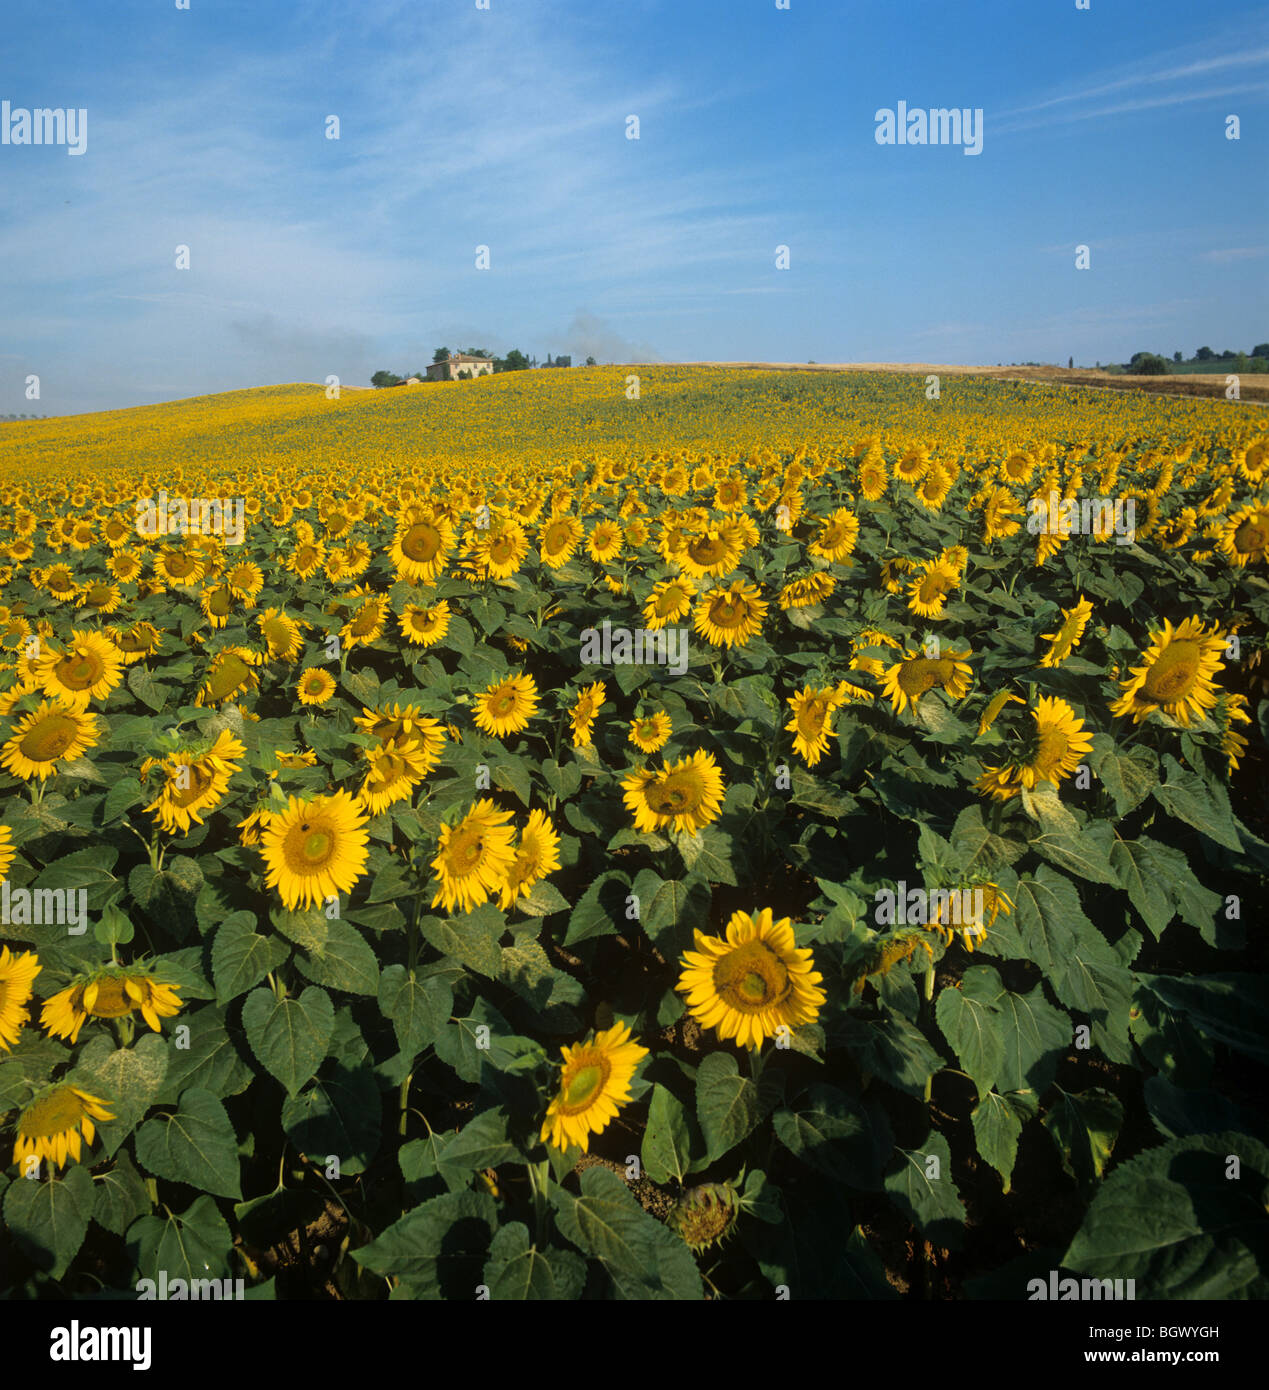 Récolte d'huile de tournesol jaune à fleurs dans les terres agricoles de Toscane en pleine journée d'été avec ciel bleu Banque D'Images